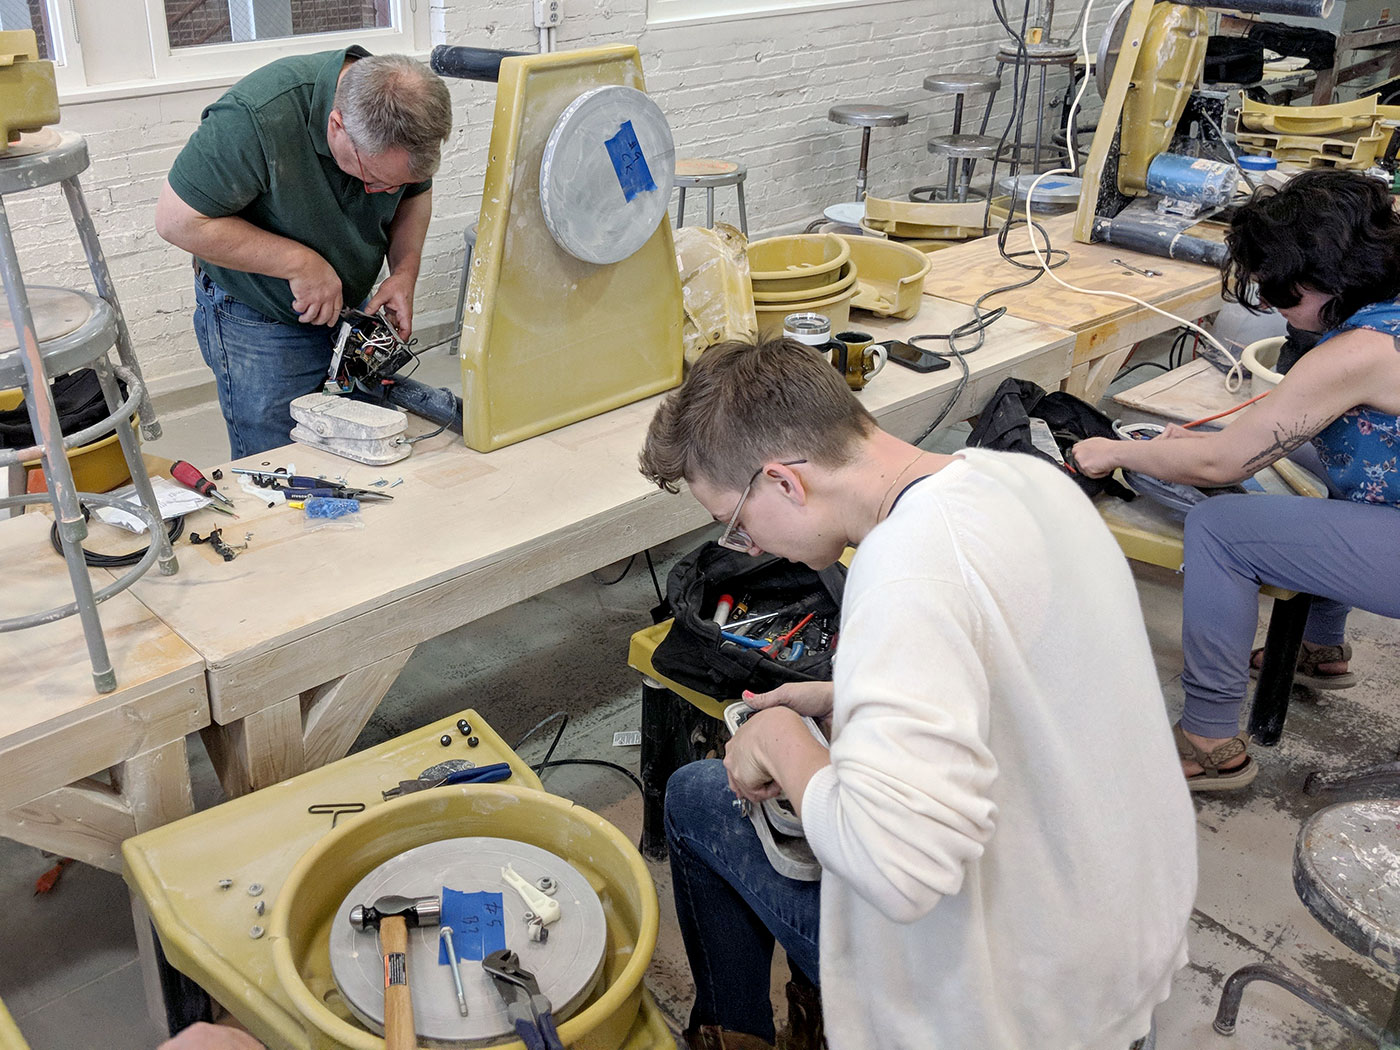 A group of people work on repairing Brent wheels